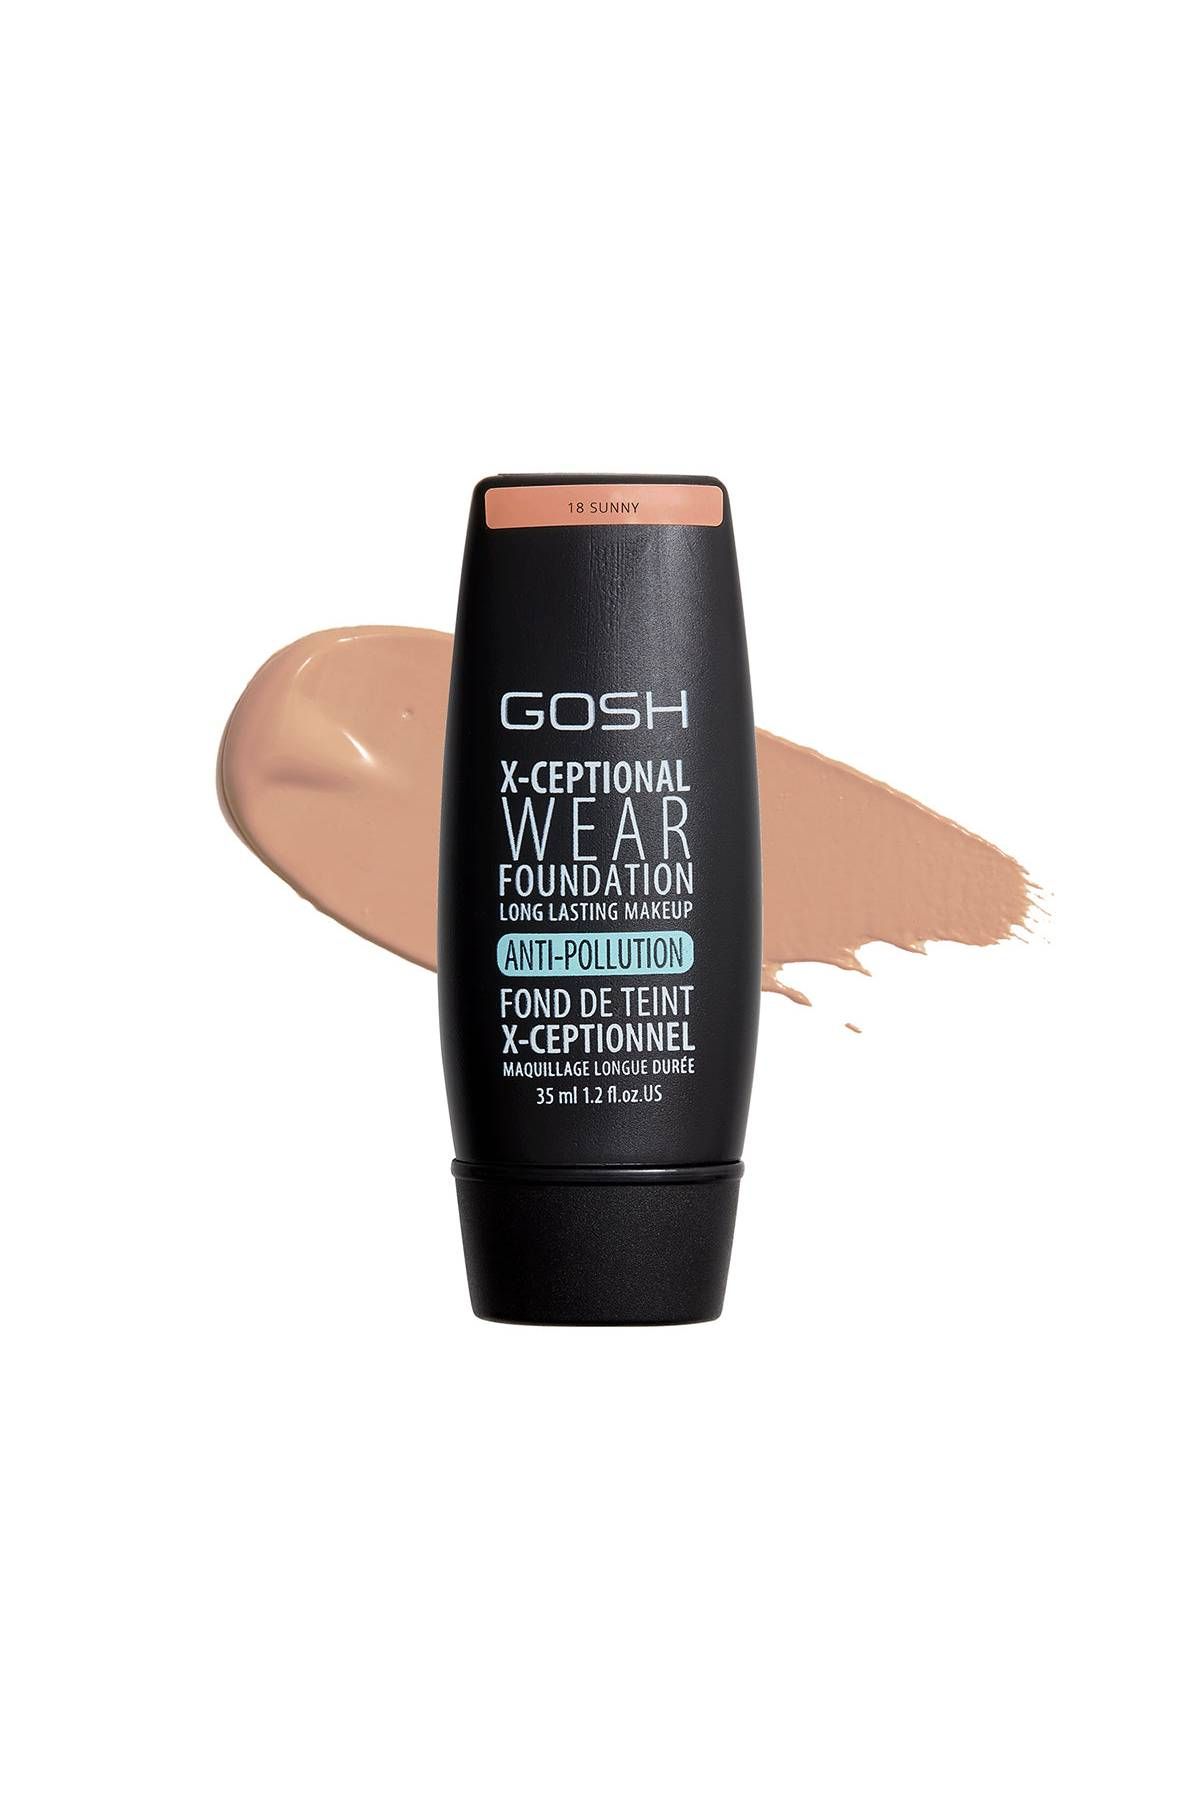 Gosh - X-ceptional Wear Makeup - 18 Sunny - 35 ml